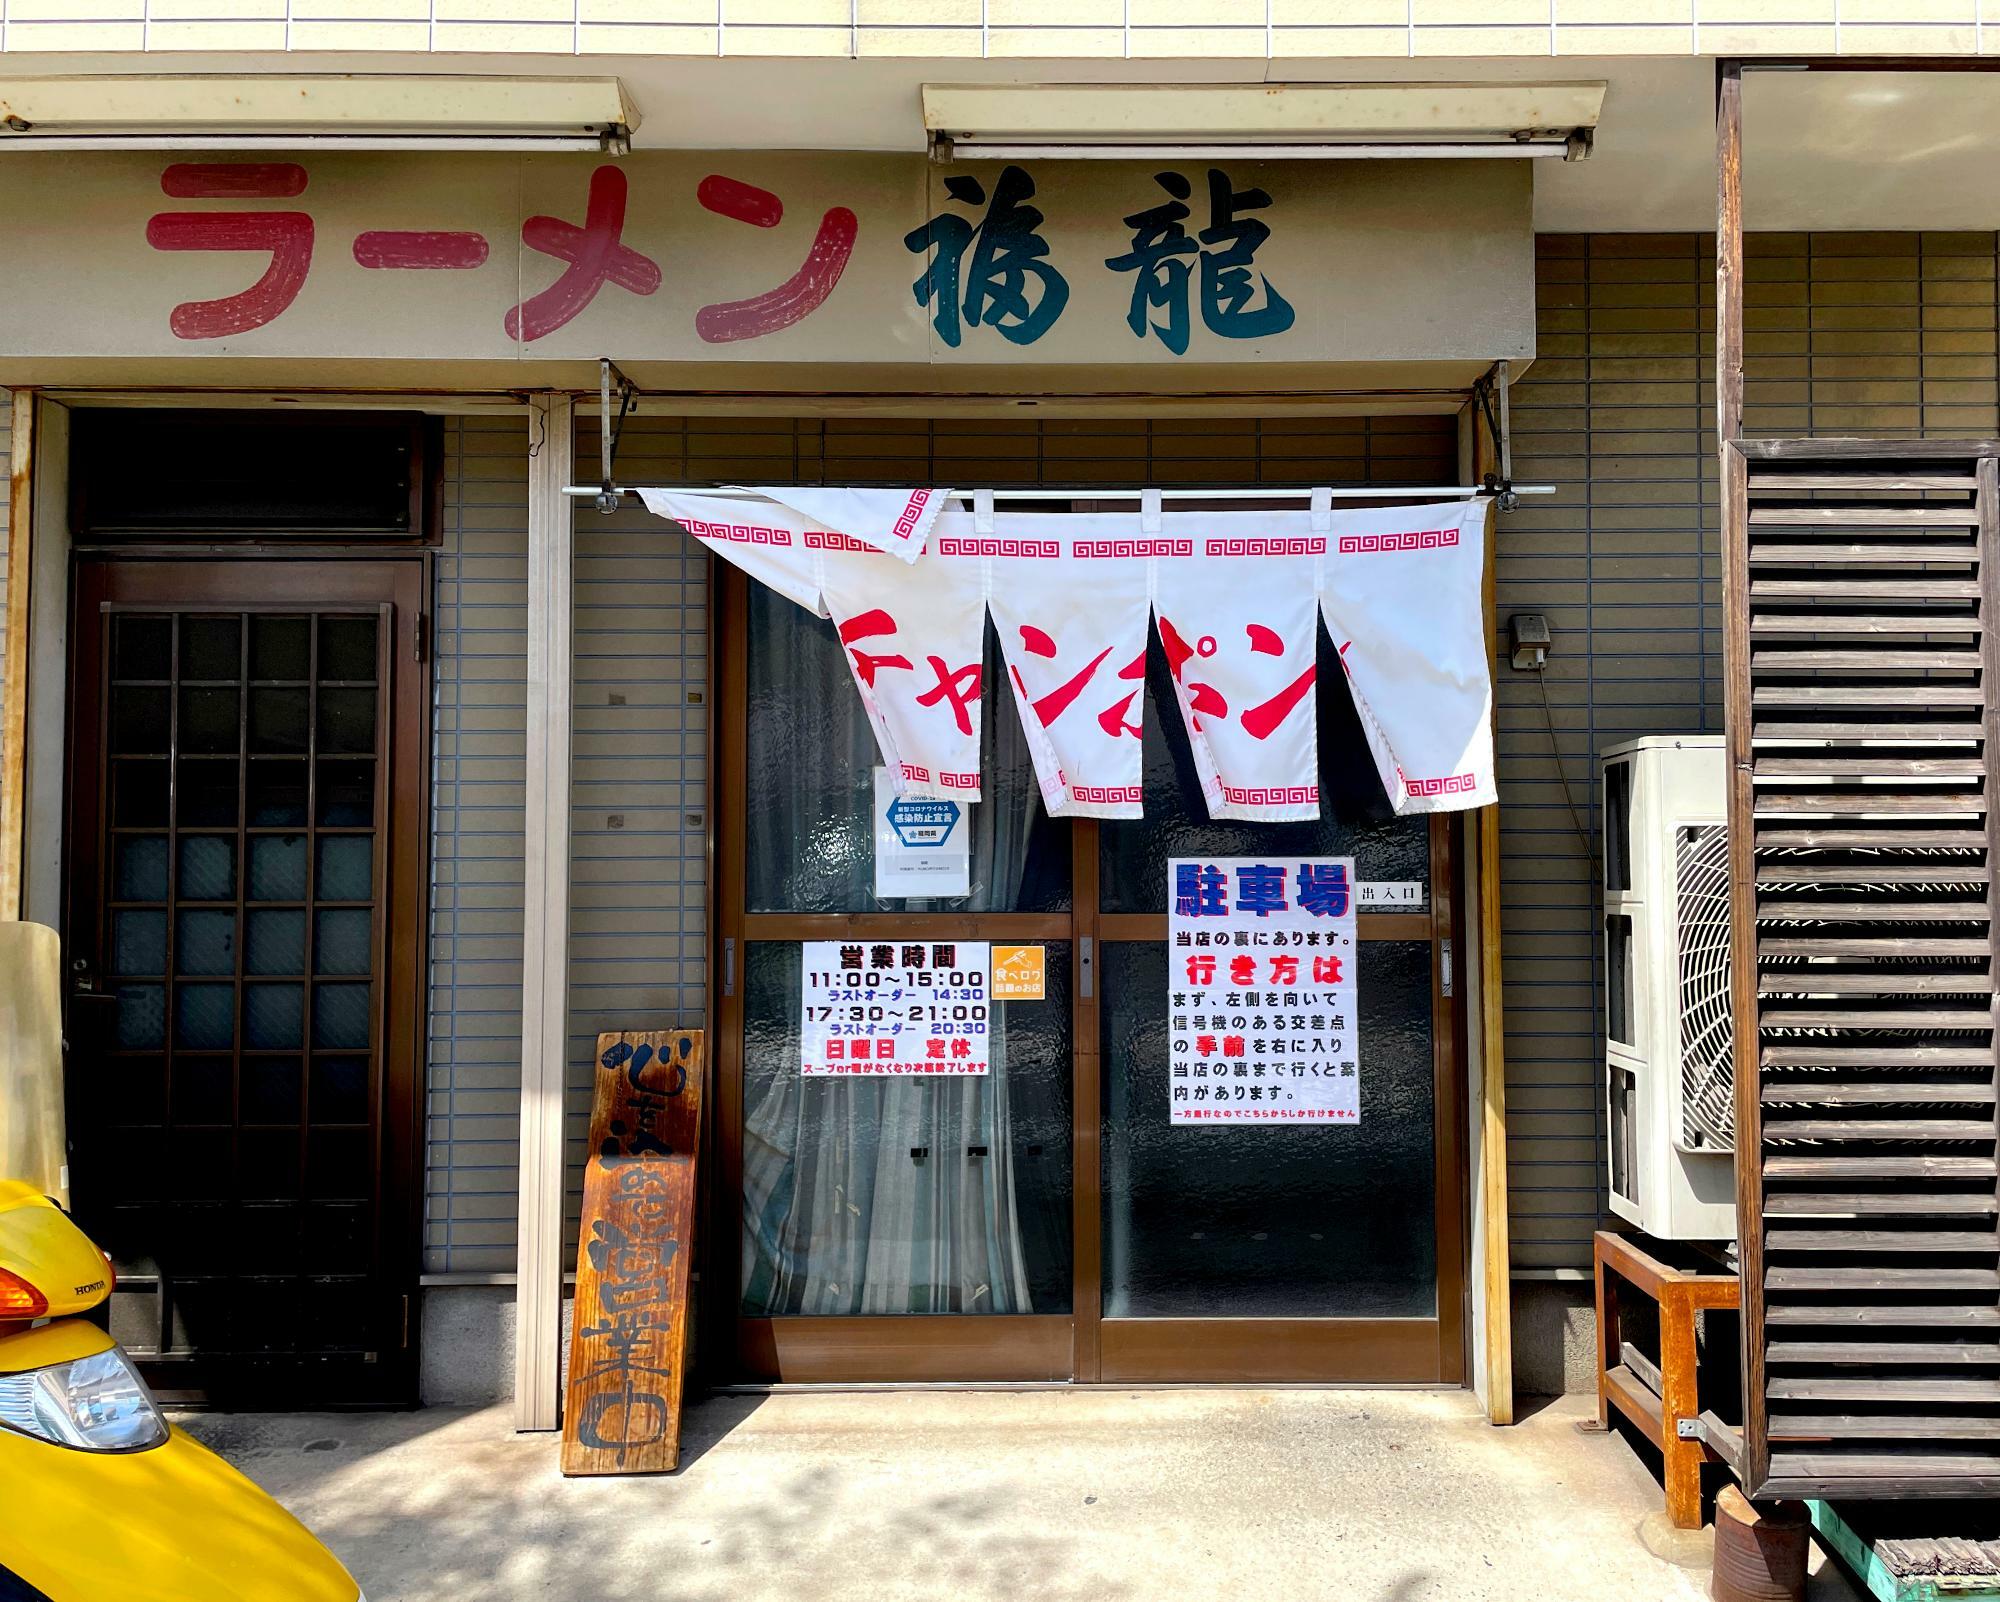 戸畑チャンポンの名店福龍は九工大正門前にあります。